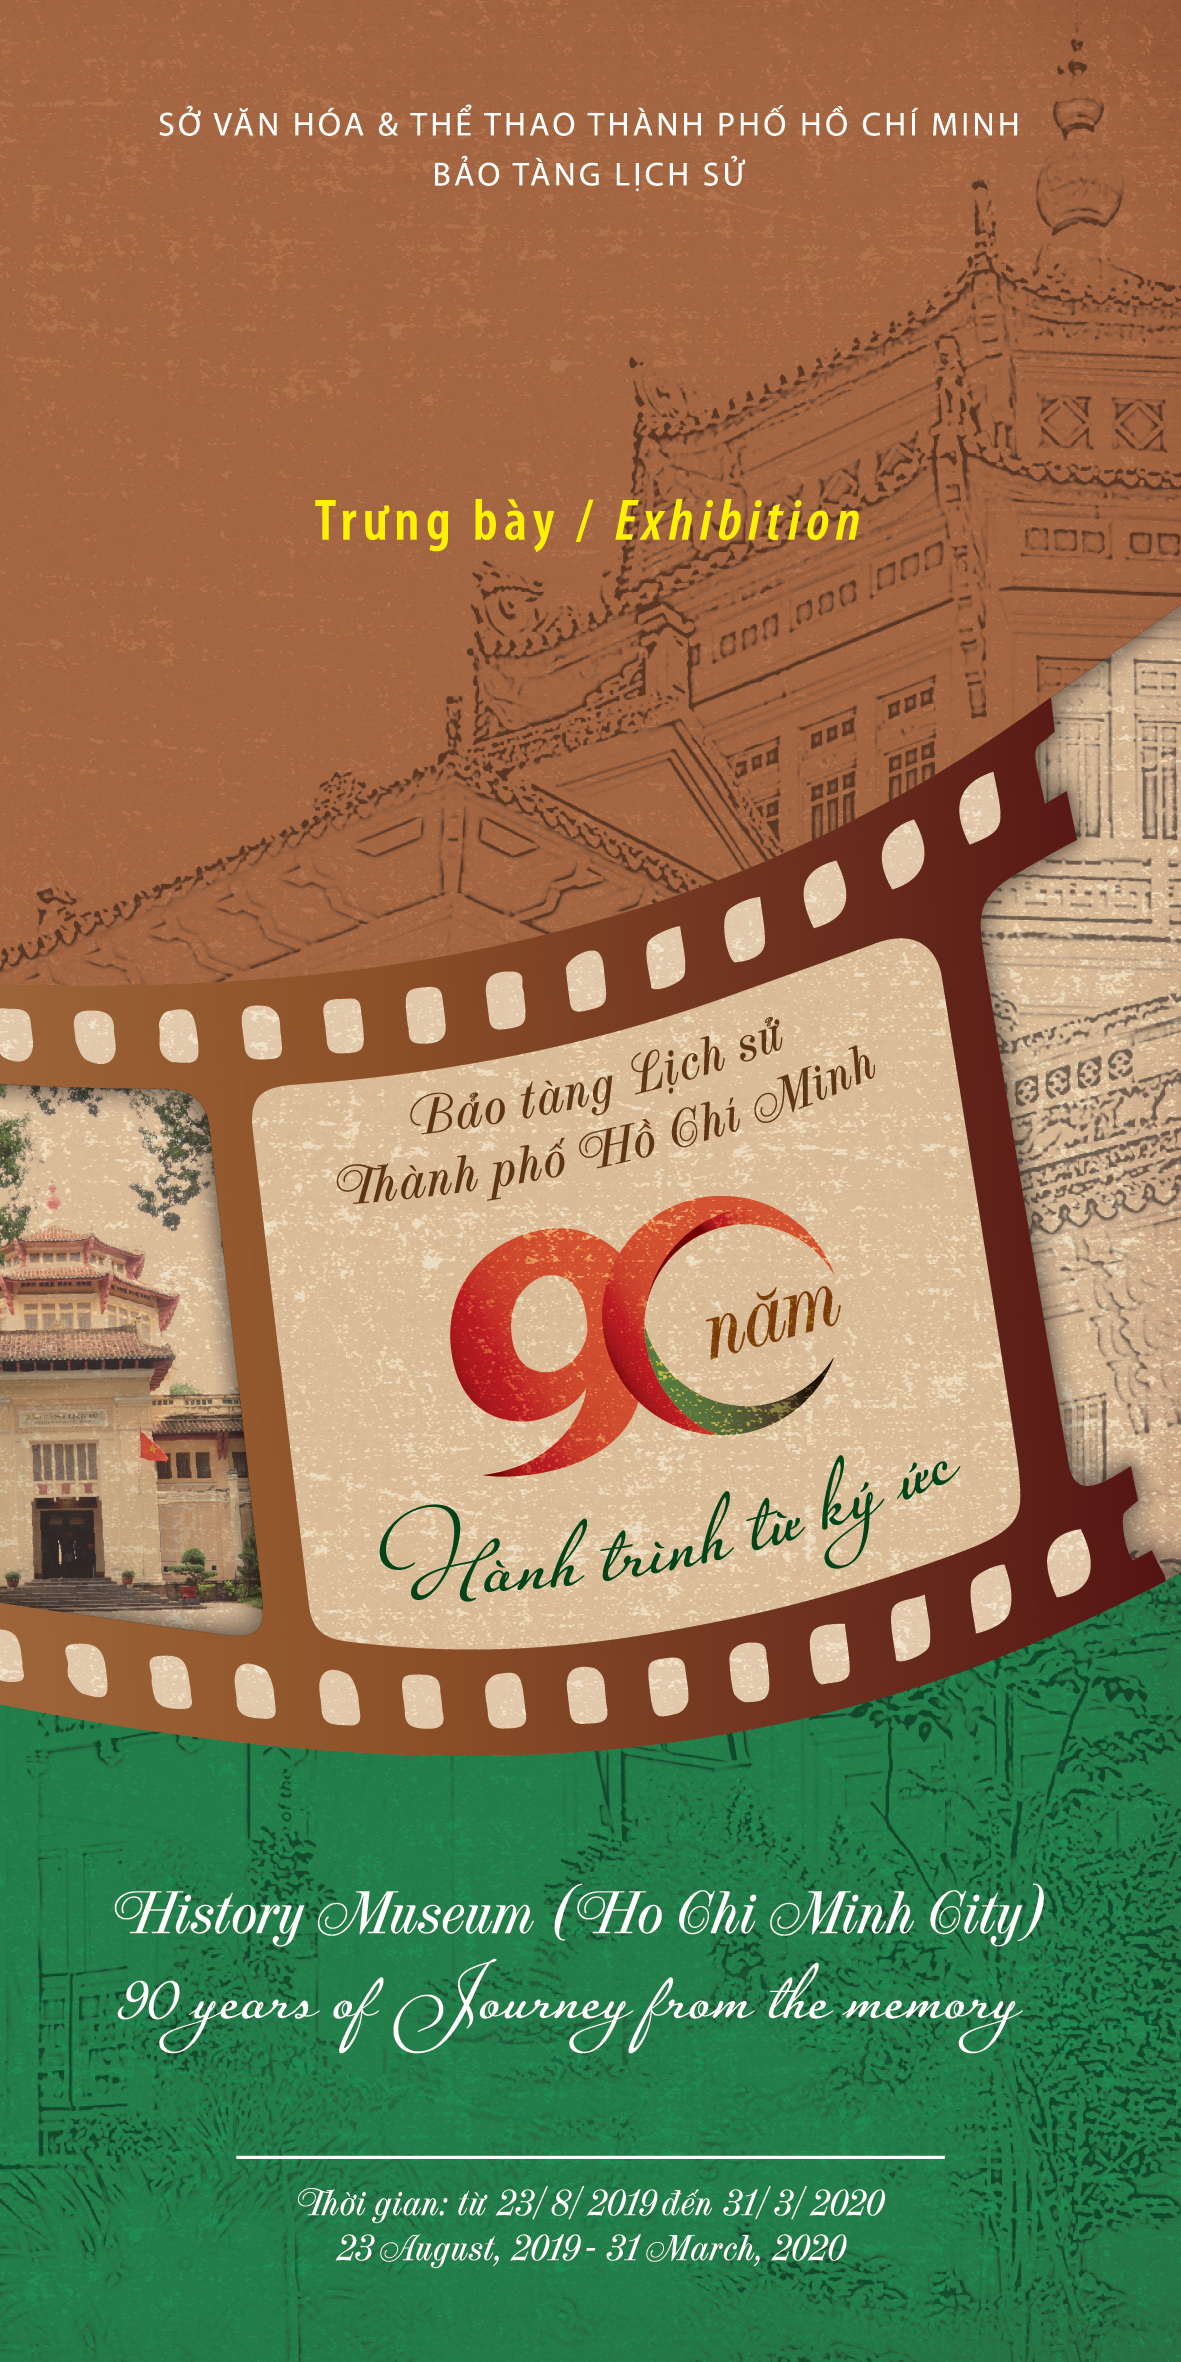 Bảo tàng Lịch sử Thành phố Hồ Chí Minh - 90 năm hành trình từ ký ức